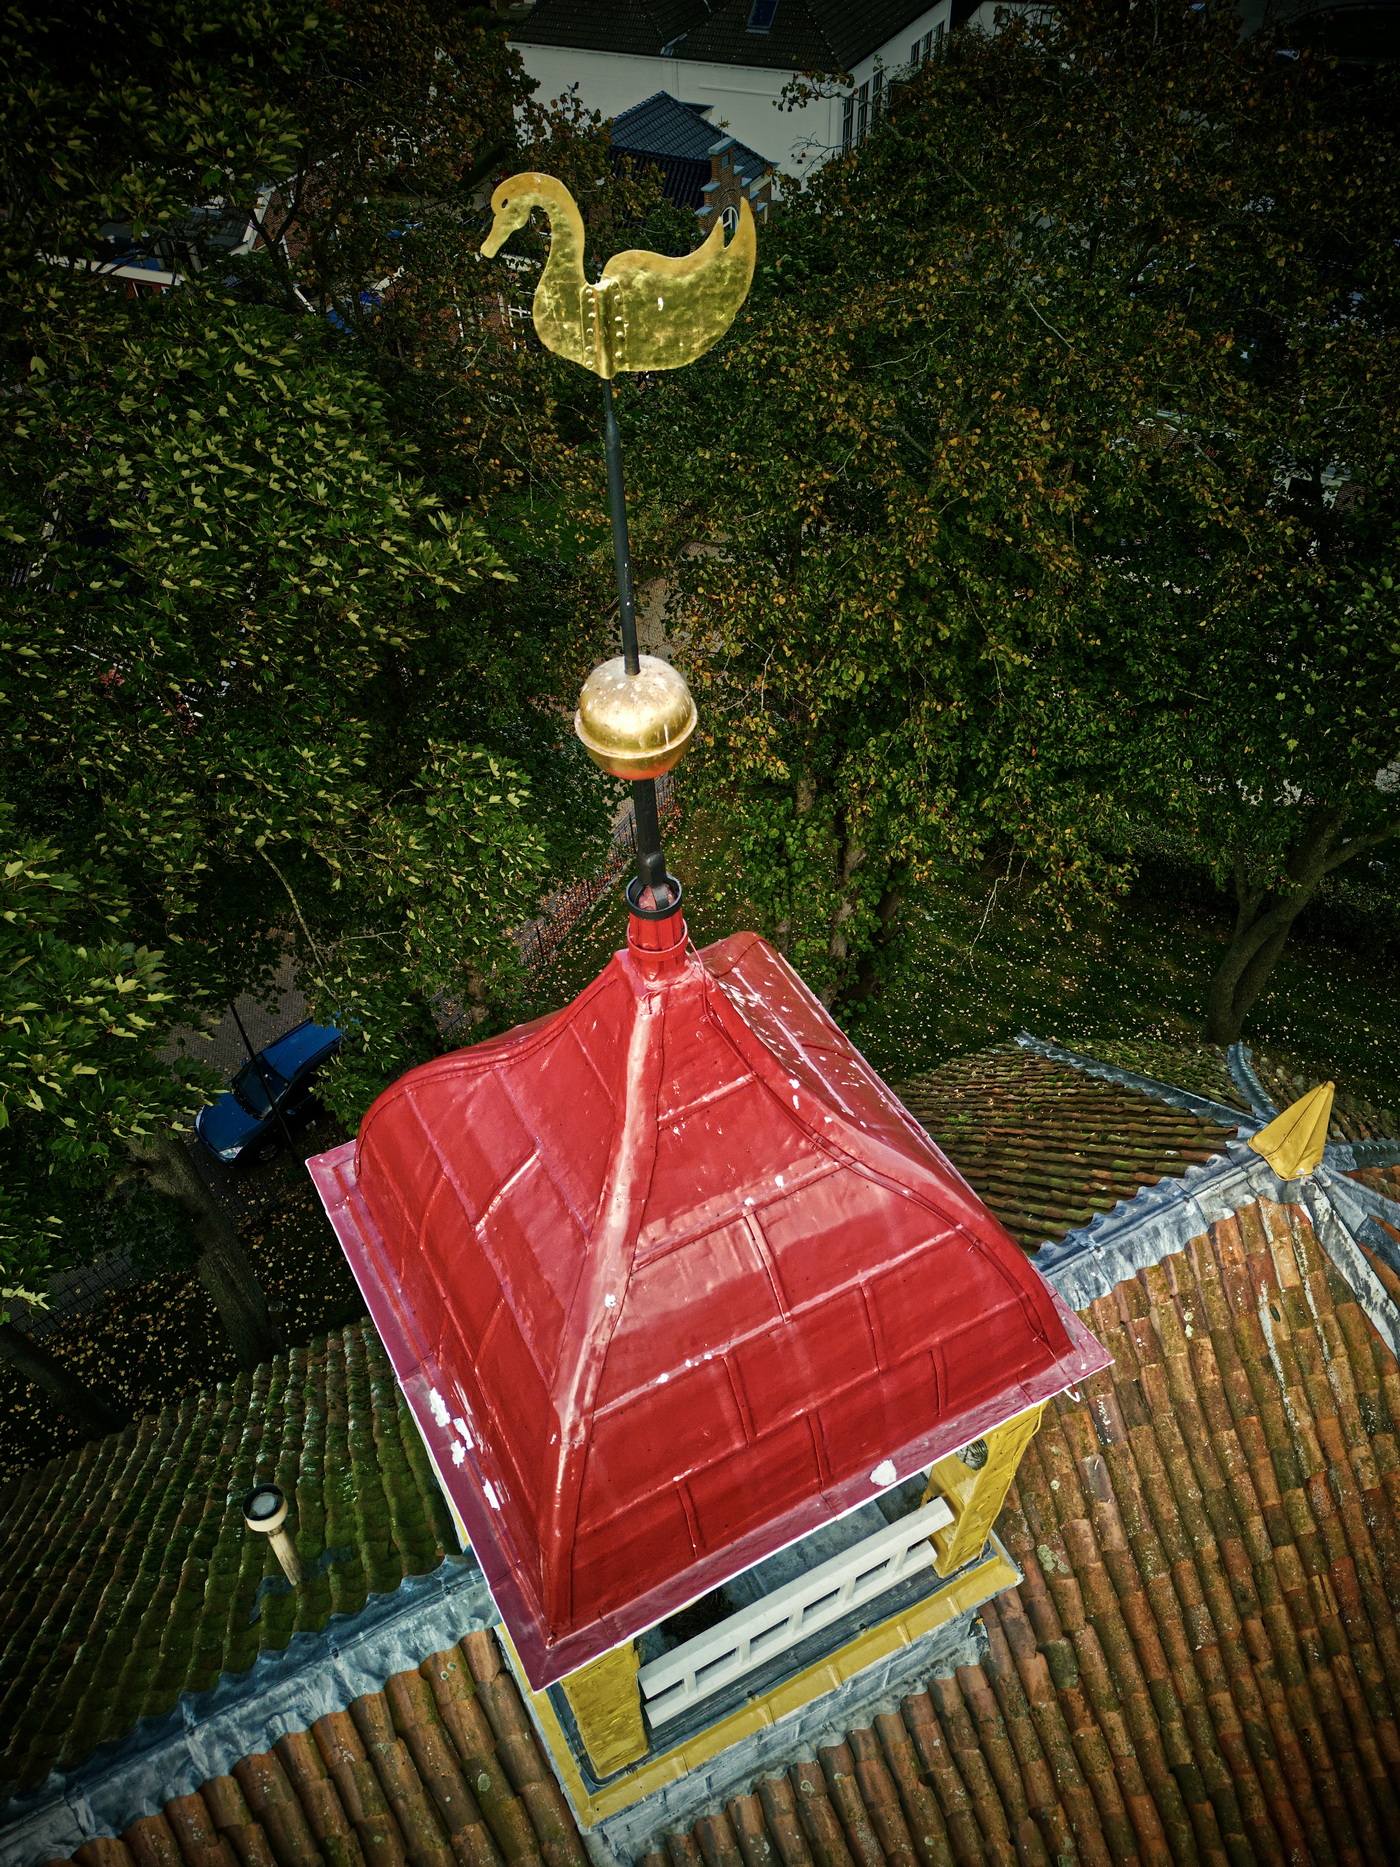 De dakruiter met torenklok op het dak van de kerk. Dronefoto: ©Jur Kuipers, 2020/21.